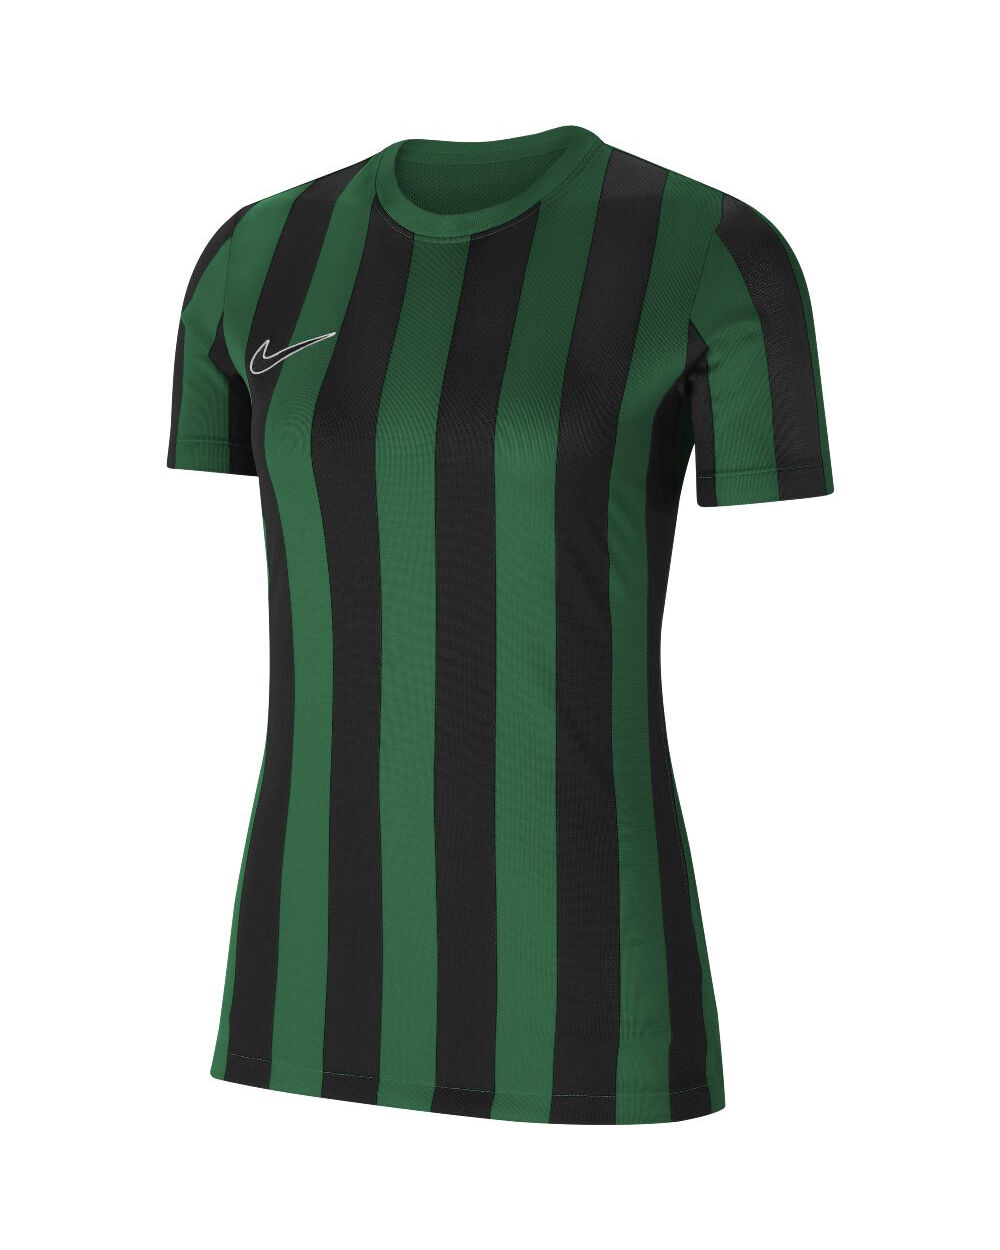 Nike Maglia Striped Division IV Verde e Nero per Donne CW3816-302 M